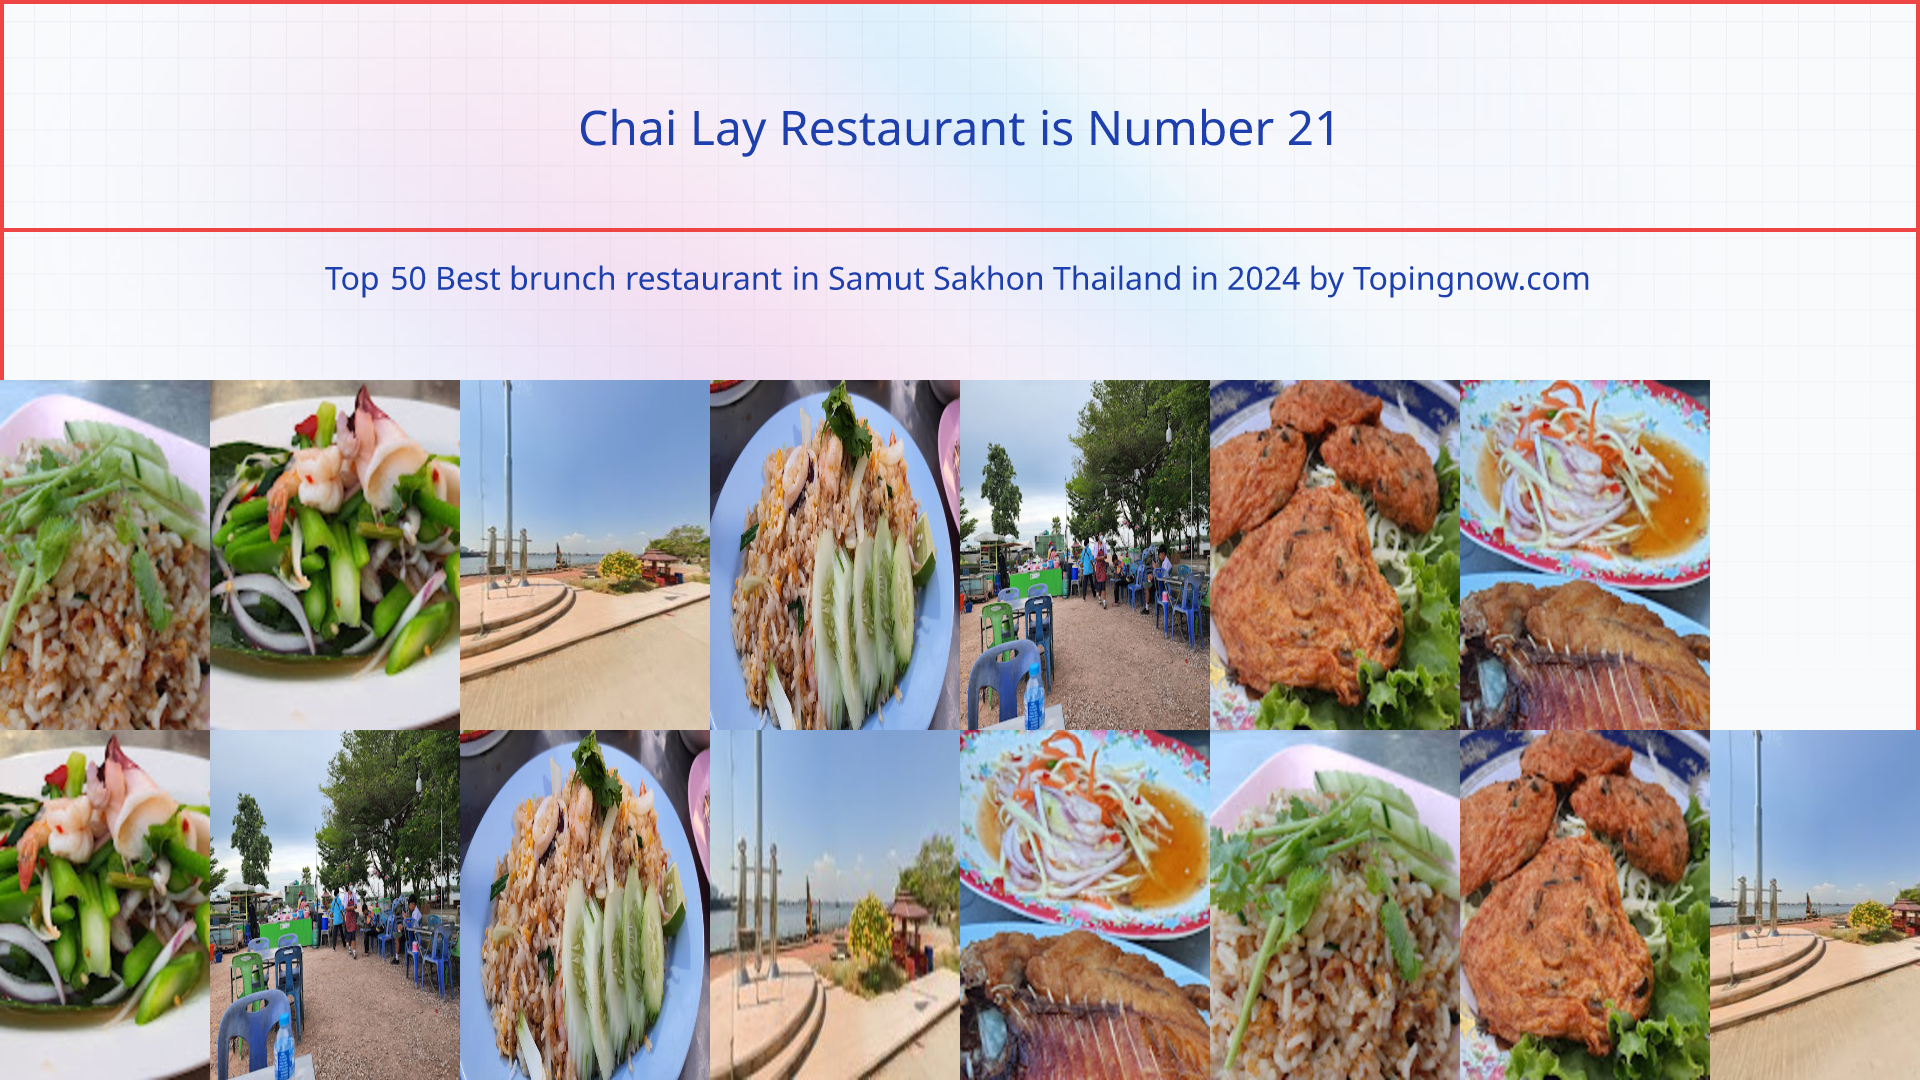 Chai Lay Restaurant: Top 50 Best brunch restaurant in Samut Sakhon Thailand in 2024